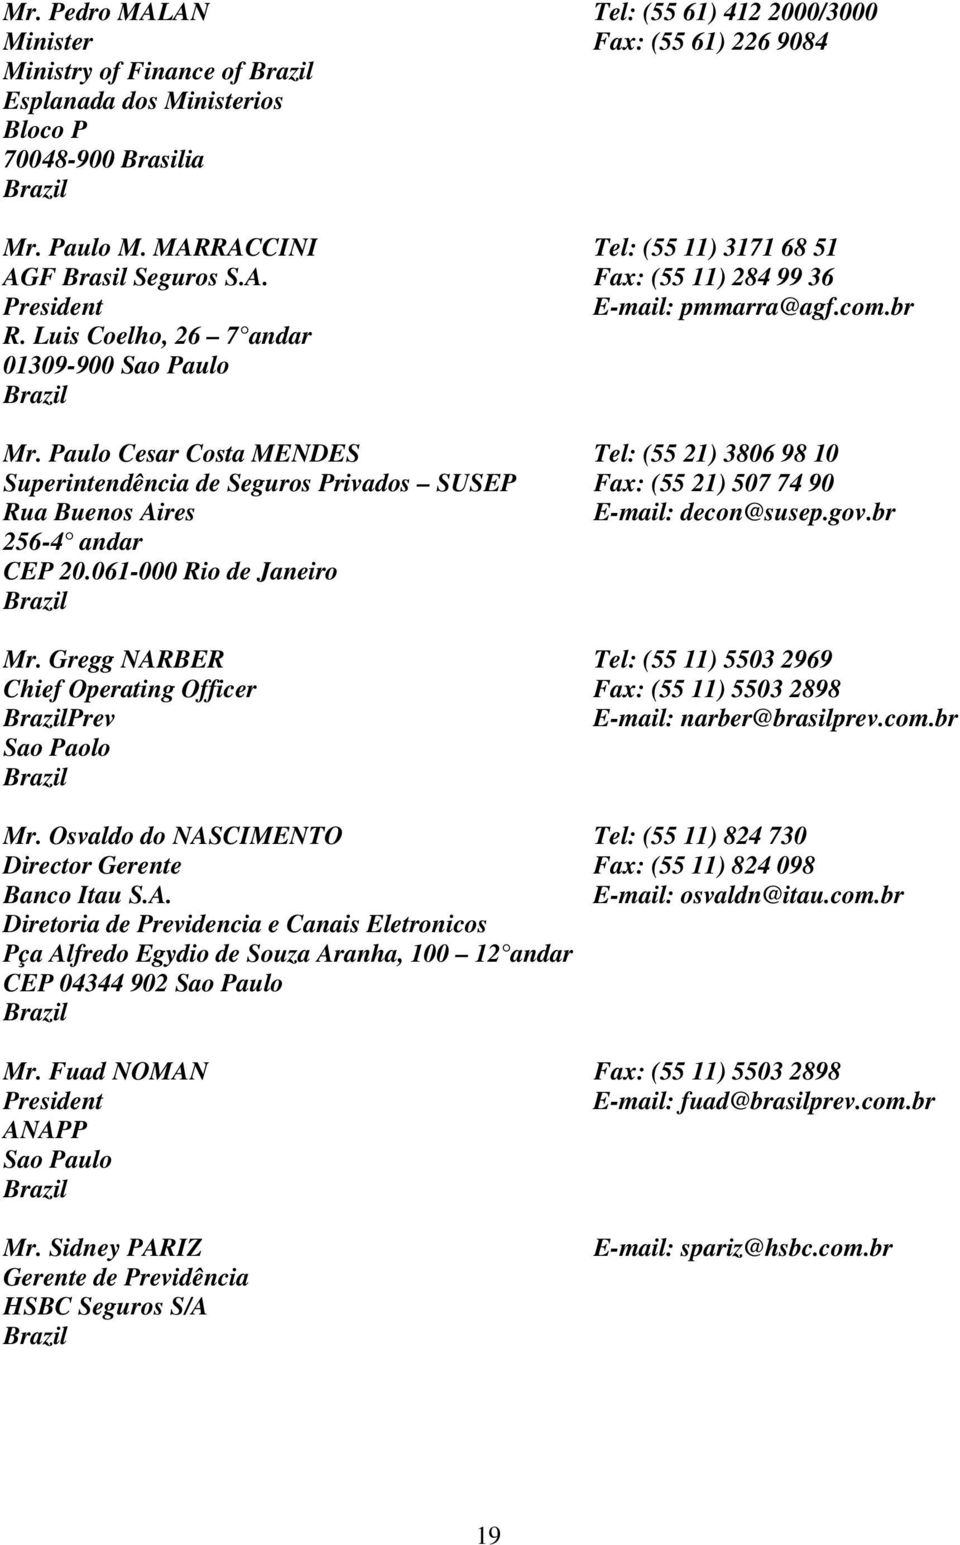 Paulo Cesar Costa MENDES Tel: (55 21) 3806 98 10 Superintendência de Seguros Privados SUSEP Fax: (55 21) 507 74 90 decon@susep.gov.br Mr.